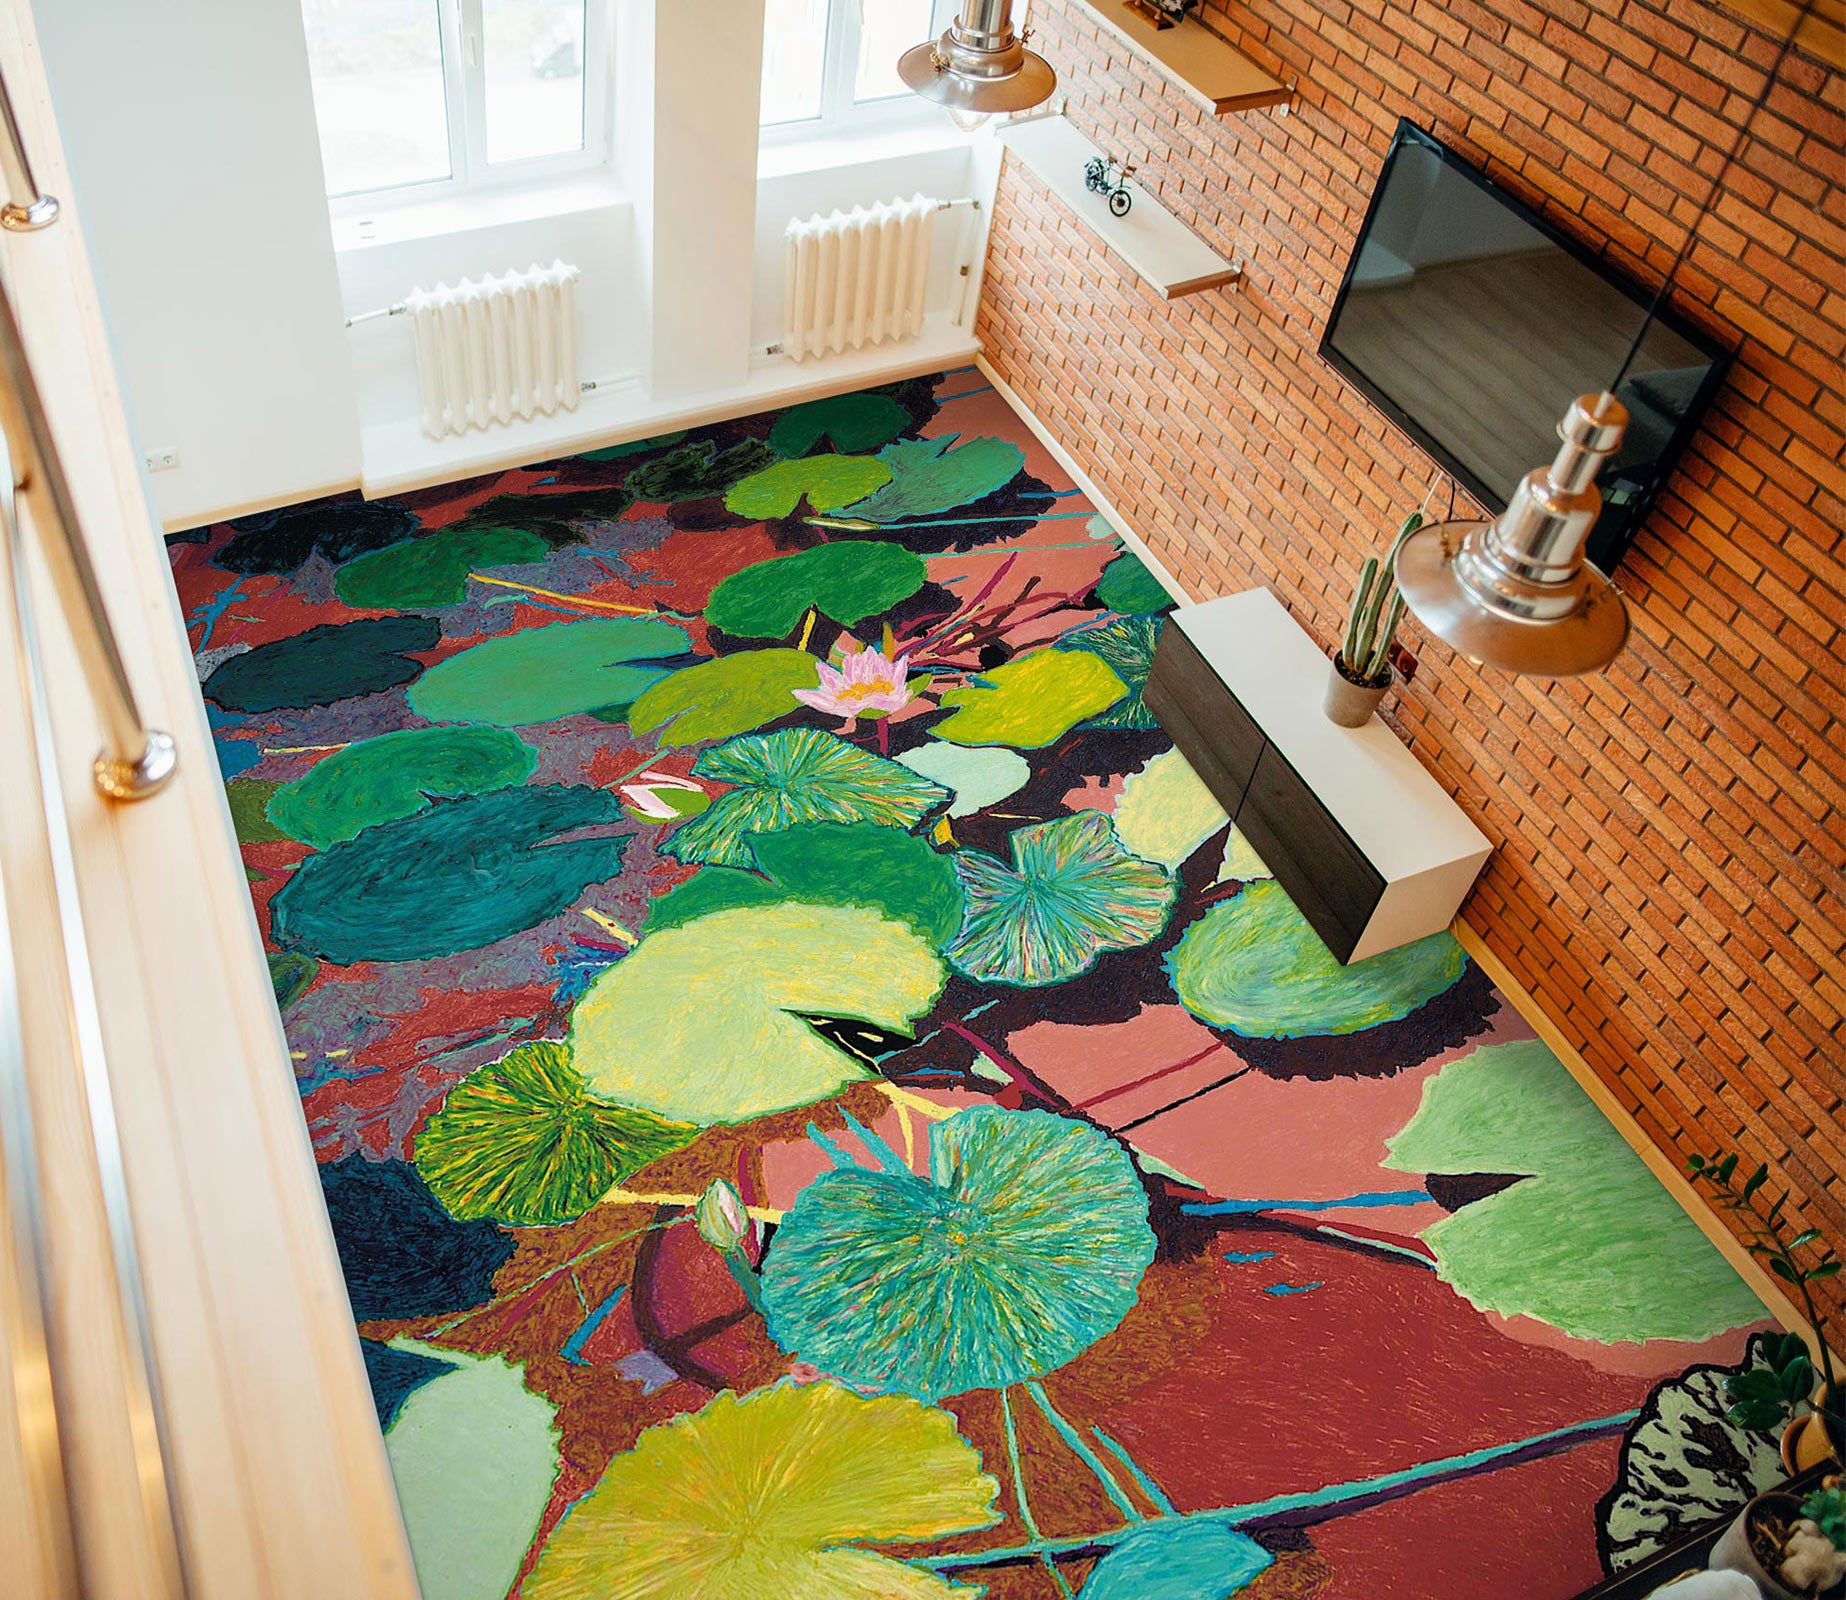 3D Colorful Lotus Leaf Painting 96122 Allan P. Friedlander Floor Mural